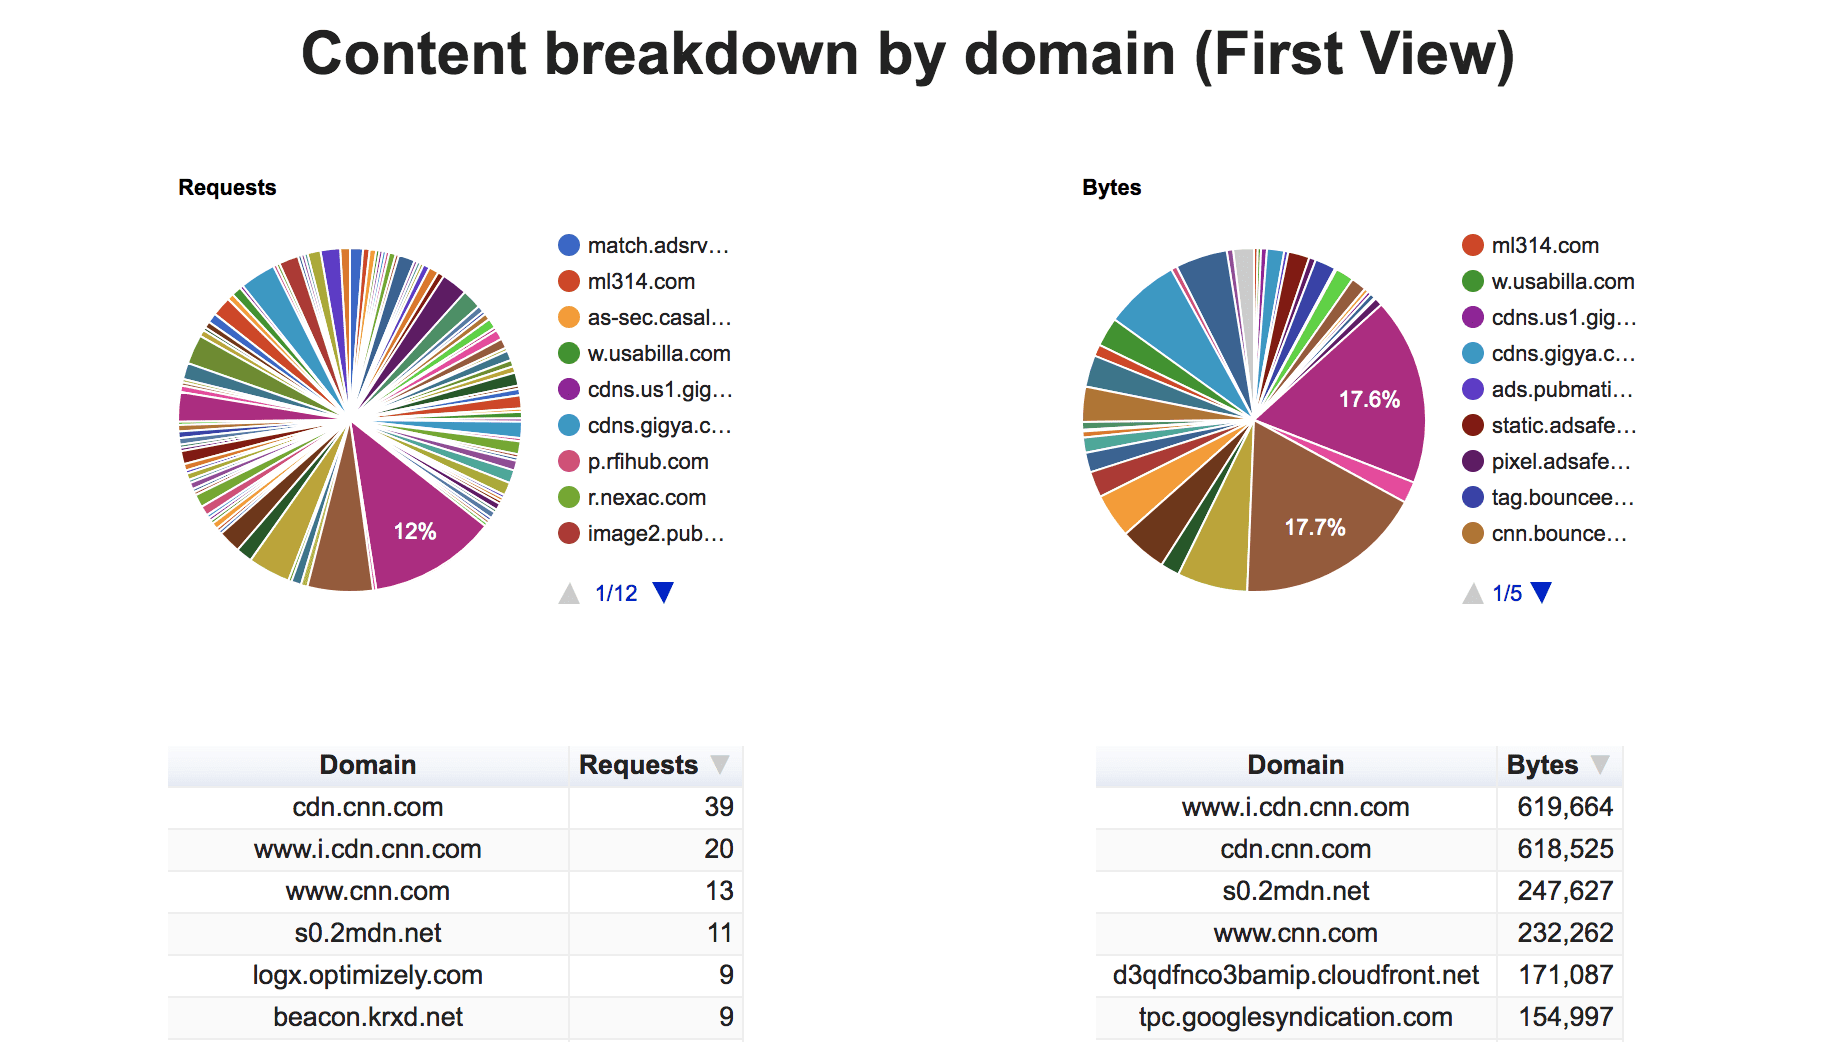 divisão do conteúdo por domínio (primeira visualização).
Mostra a porcentagem de solicitações e bytes de cada terceiro